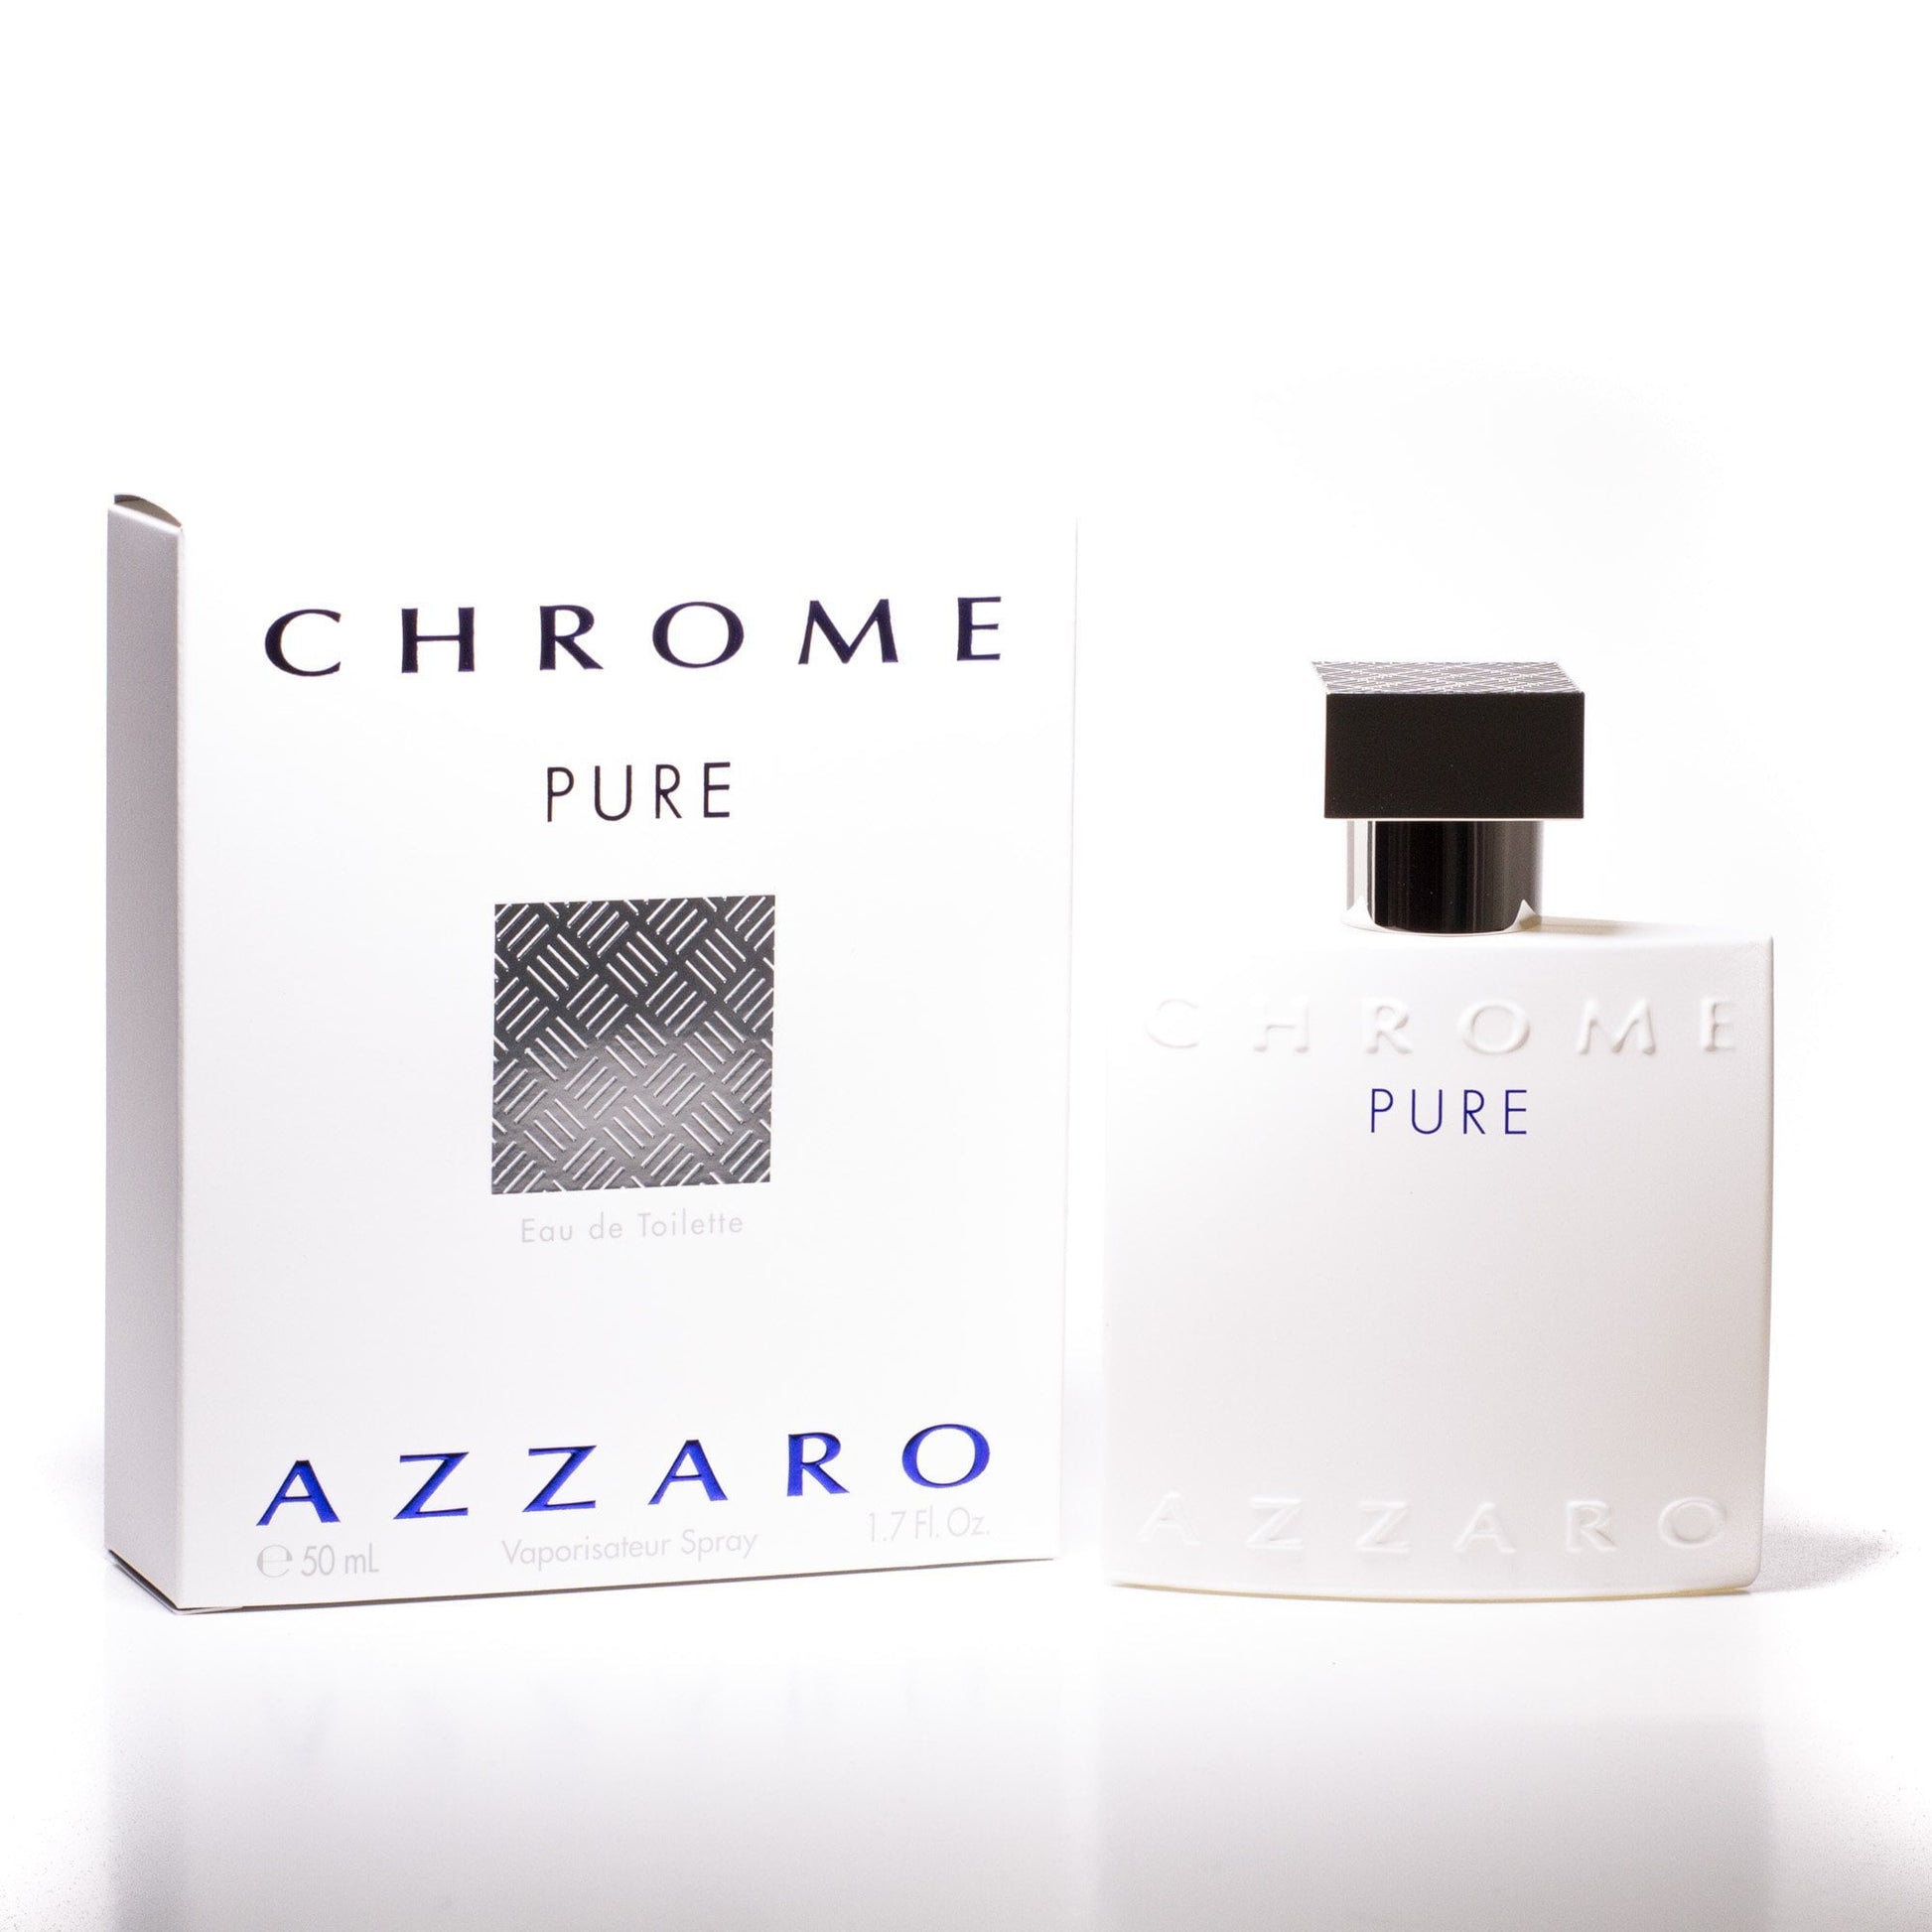 Chrome Pure Eau de Toilette Spray for Men by Azzaro, Product image 1